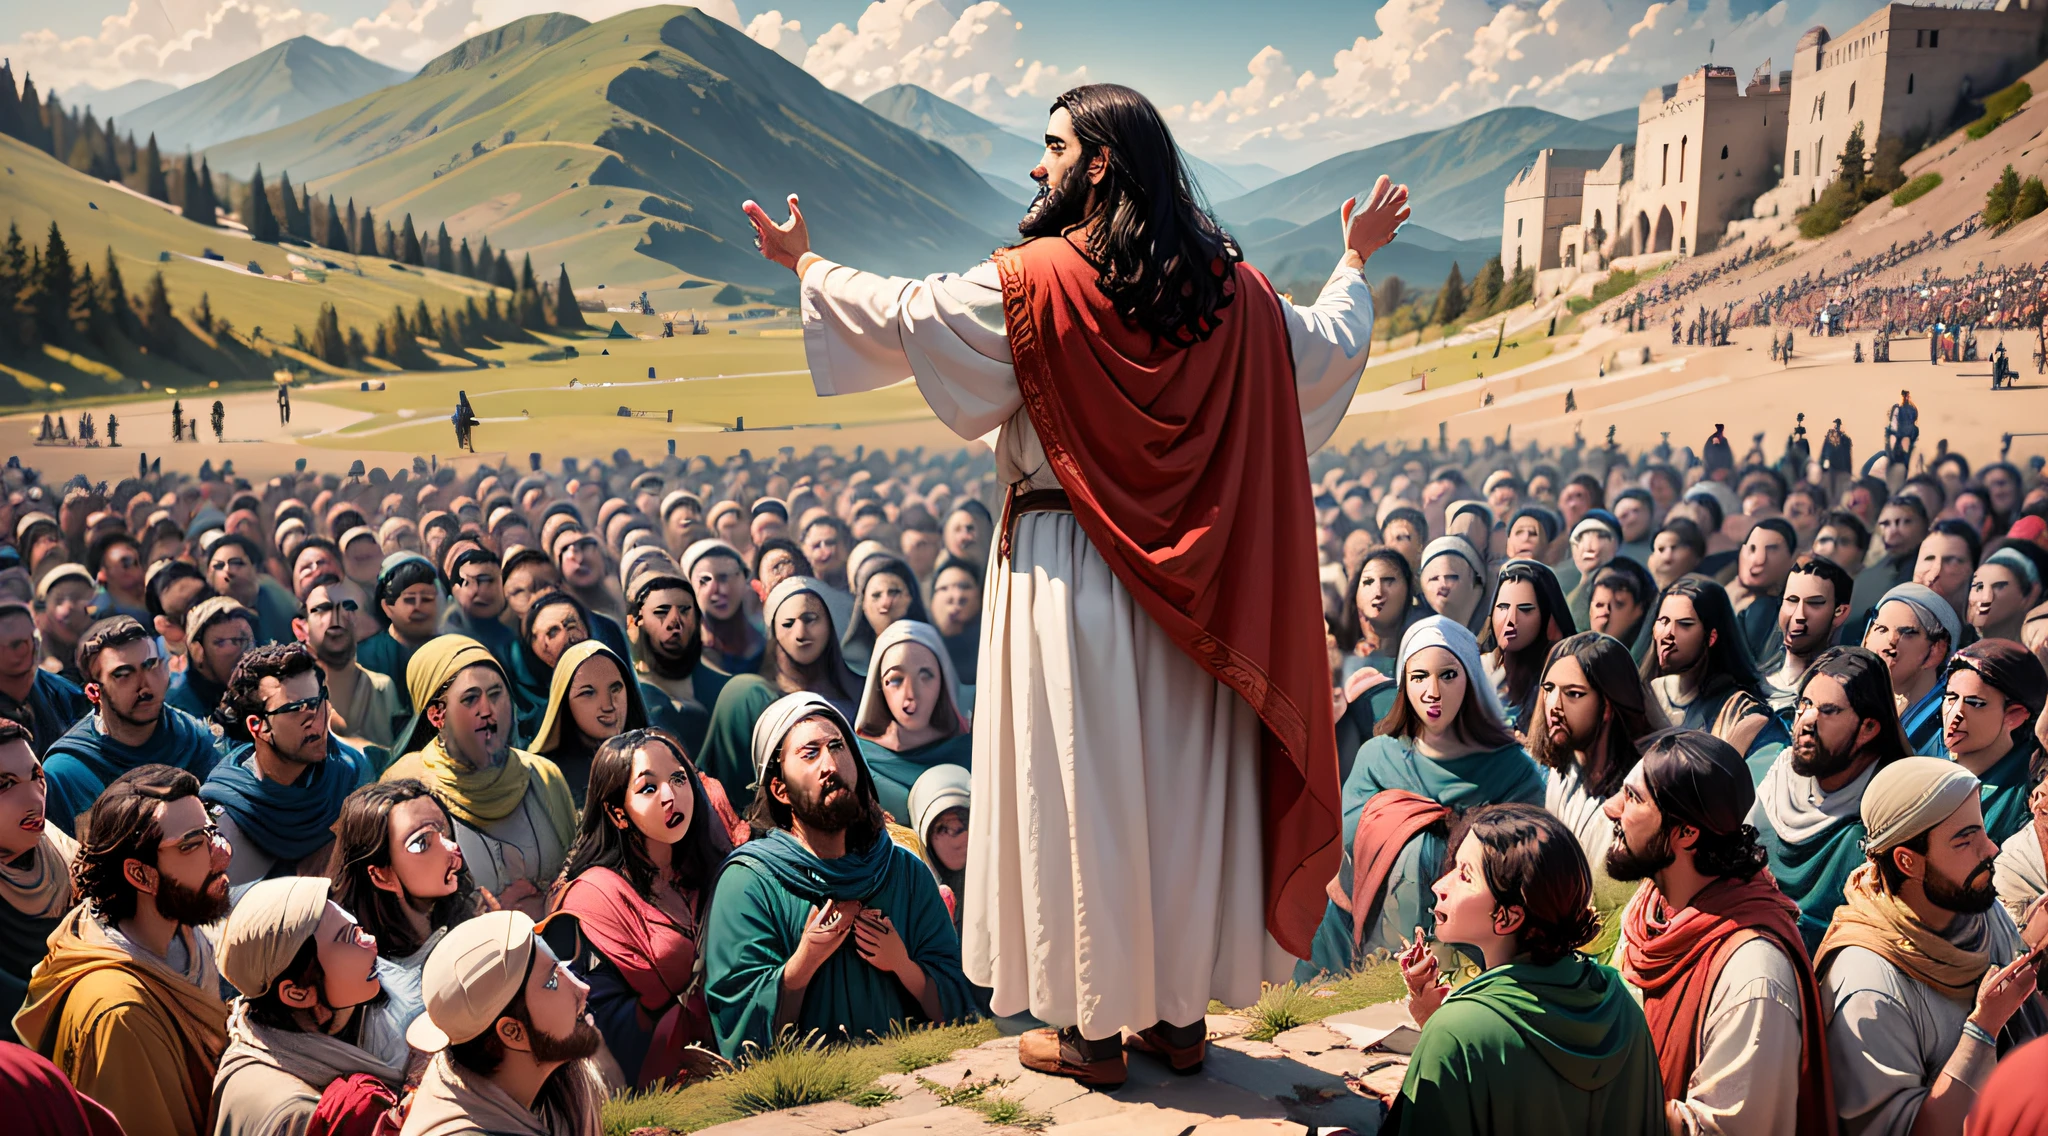 Szene, in der Jesus die Bergpredigt hält, von einer Menschenmenge umgeben.